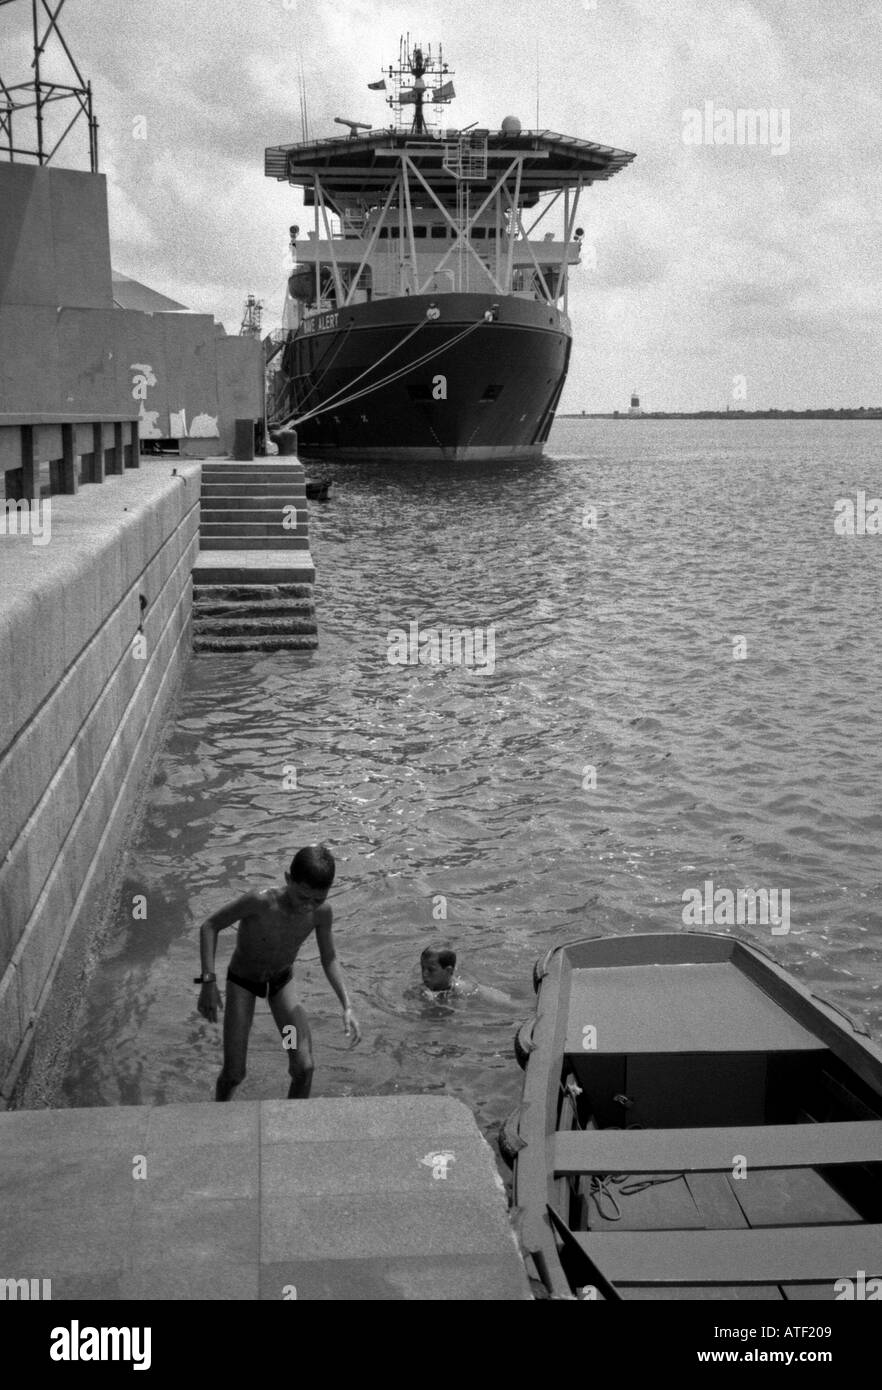 "Laissez faire" Vue panoramique mer baignade garçon enfants hydropanorama ferry port Pernambuco Recife Brésil Brasil Amérique Latine du Sud Banque D'Images